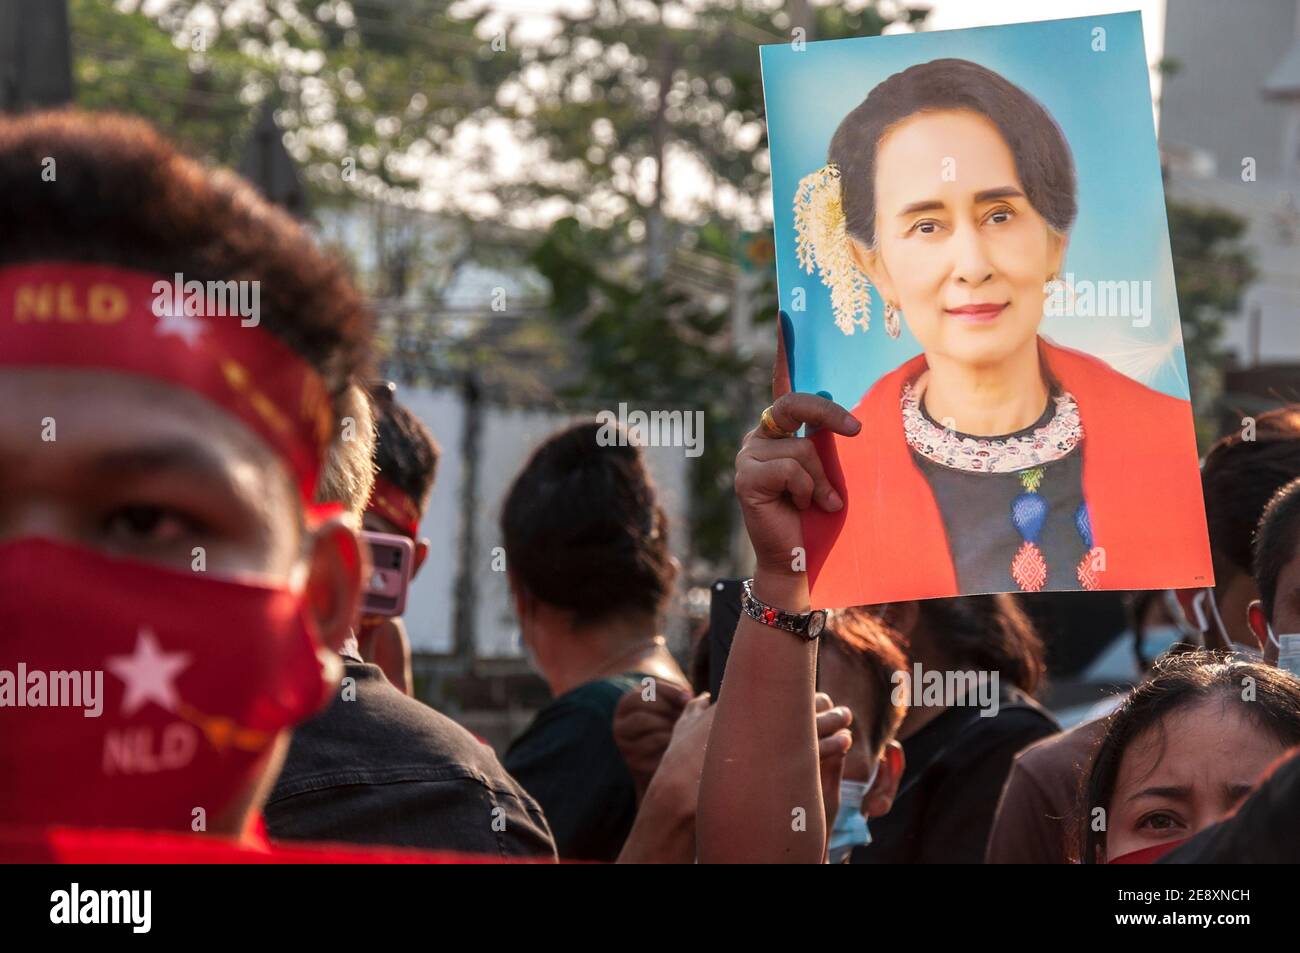 Il sostenitore della NLD tiene un ritratto di Aung San Suu Kyi durante la manifestazione. I sostenitori della Lega nazionale per la democrazia (NLD) e i manifestanti anti anti-colpo thailandesi si radunano fuori dall'ambasciata del Myanmar dopo che l'esercito del Myanmar ha preso il potere da un governo civile democraticamente eletto e ha arrestato il suo leader Aung San Suu Kyi. La polizia tailandese in rivolta ha poi disperso i dimostranti. Foto Stock